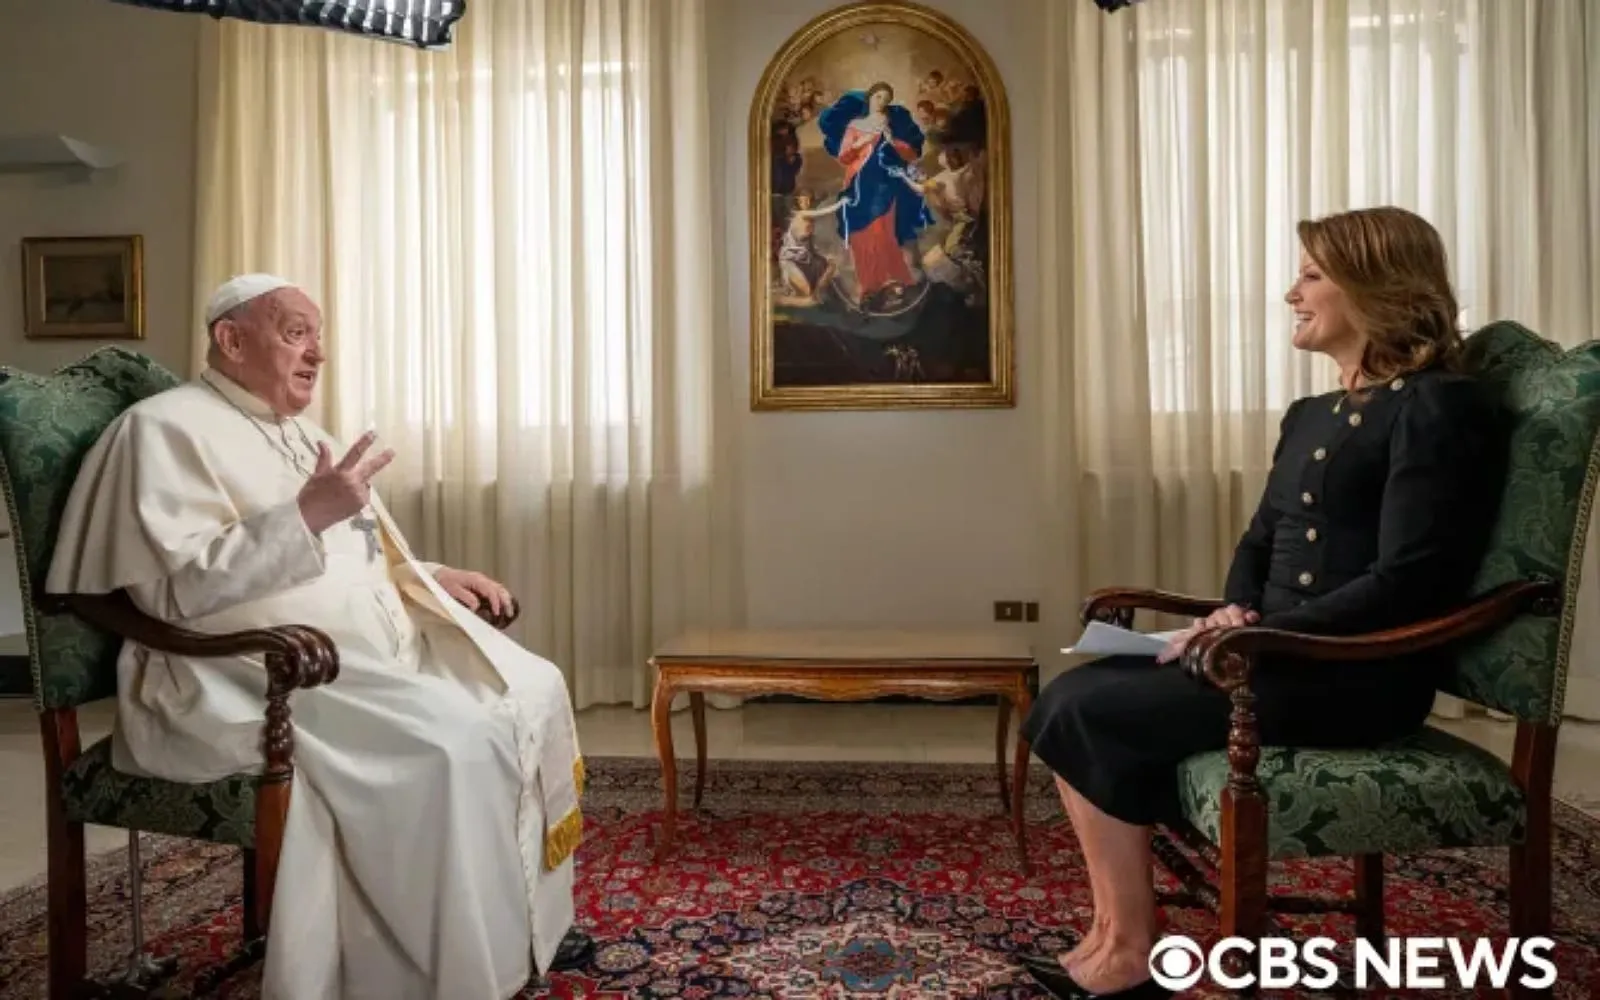  Críticos conservadores têm atitude suicida, diz o papa em entrevista a TV dos EUA 